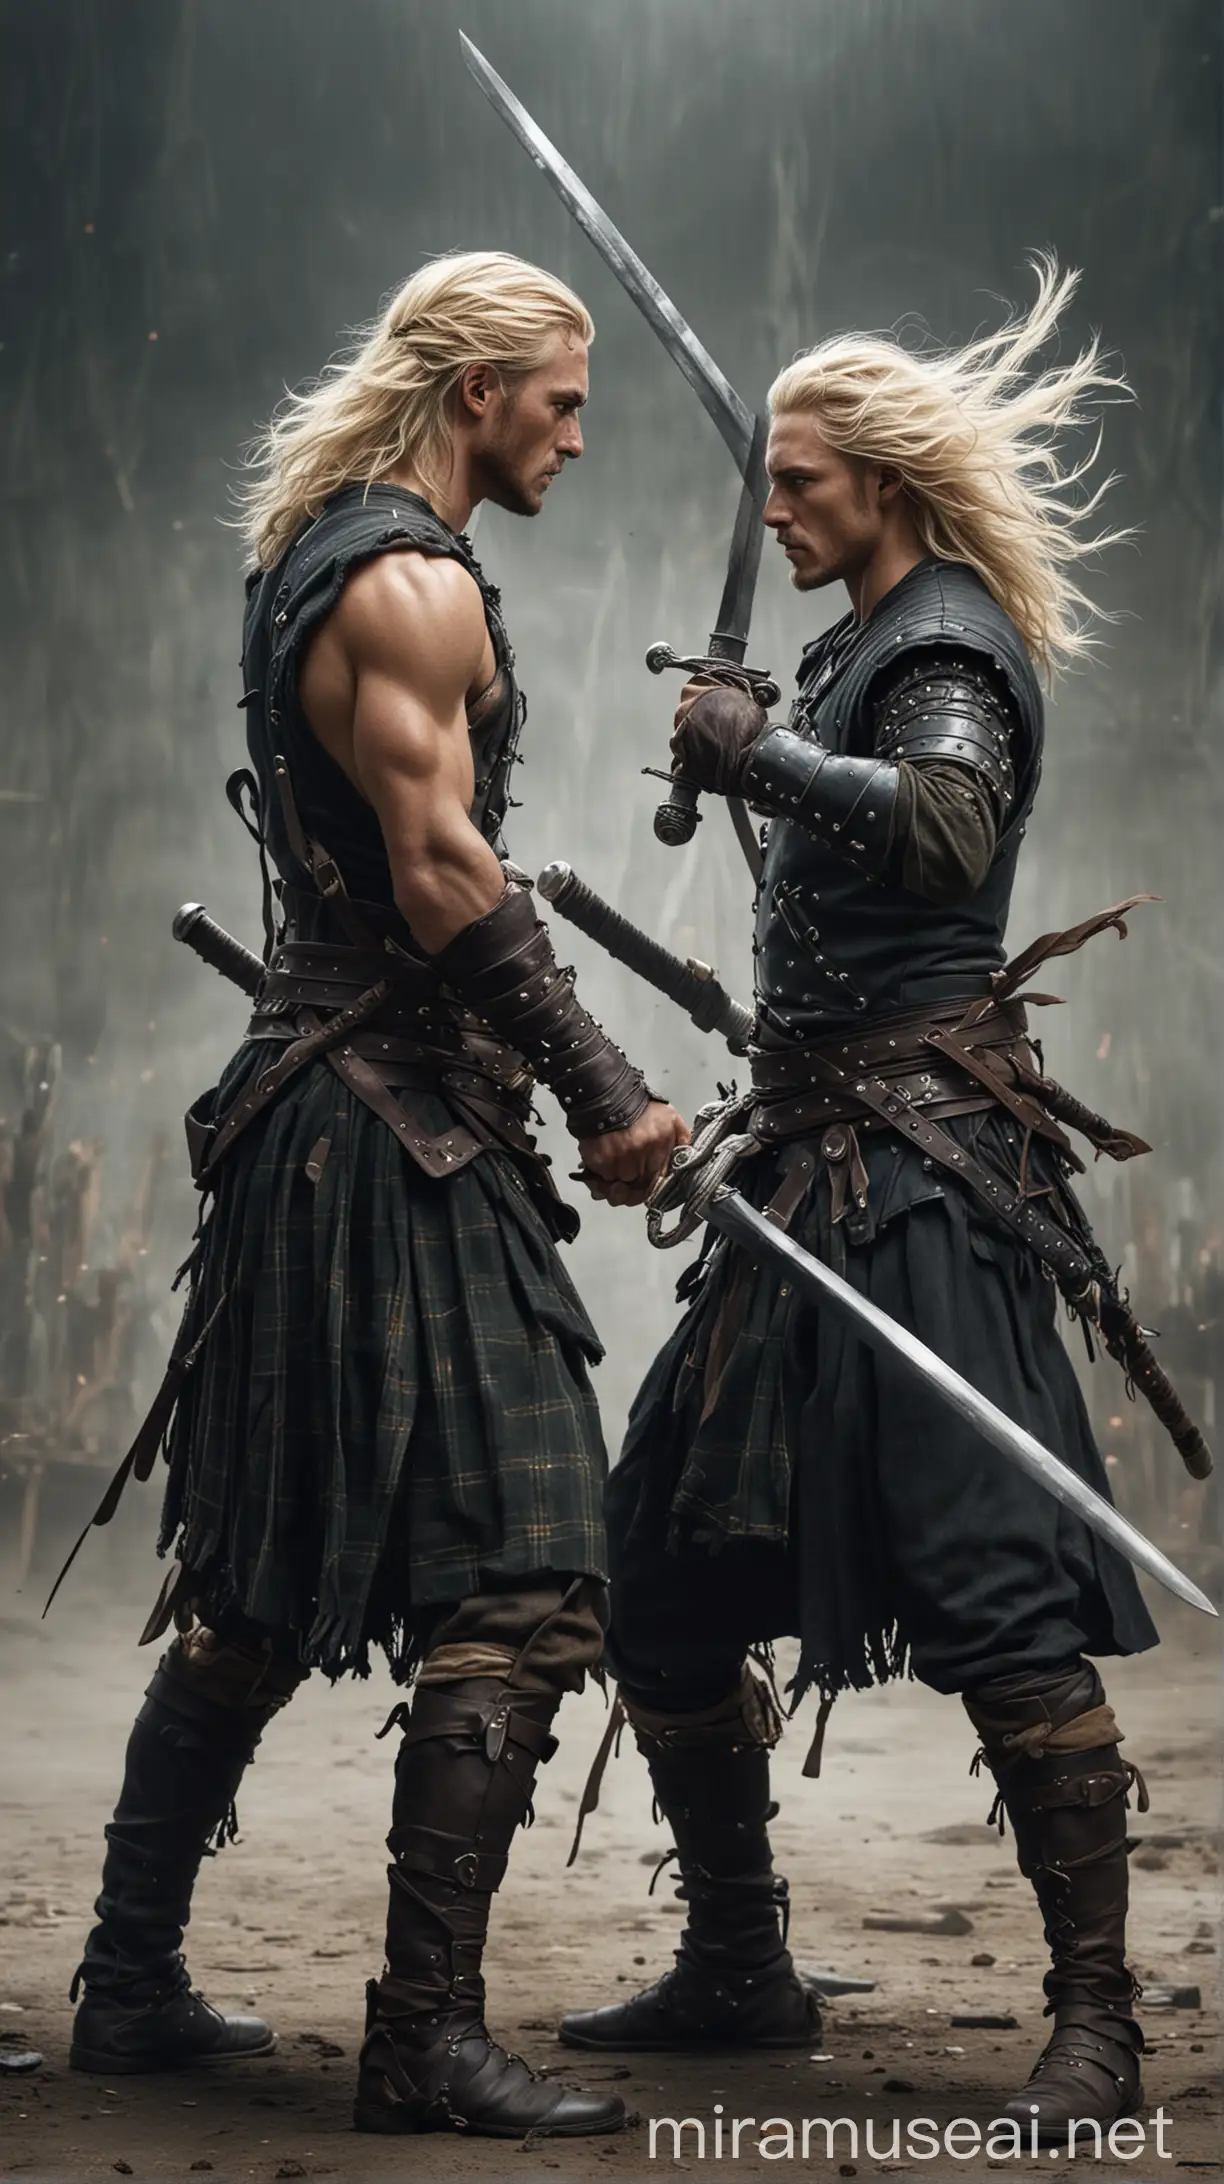 Dos guerreros luchando con espadas, guapos, escoceses, uno es moreno. El otro es rubio. Hiperrealista